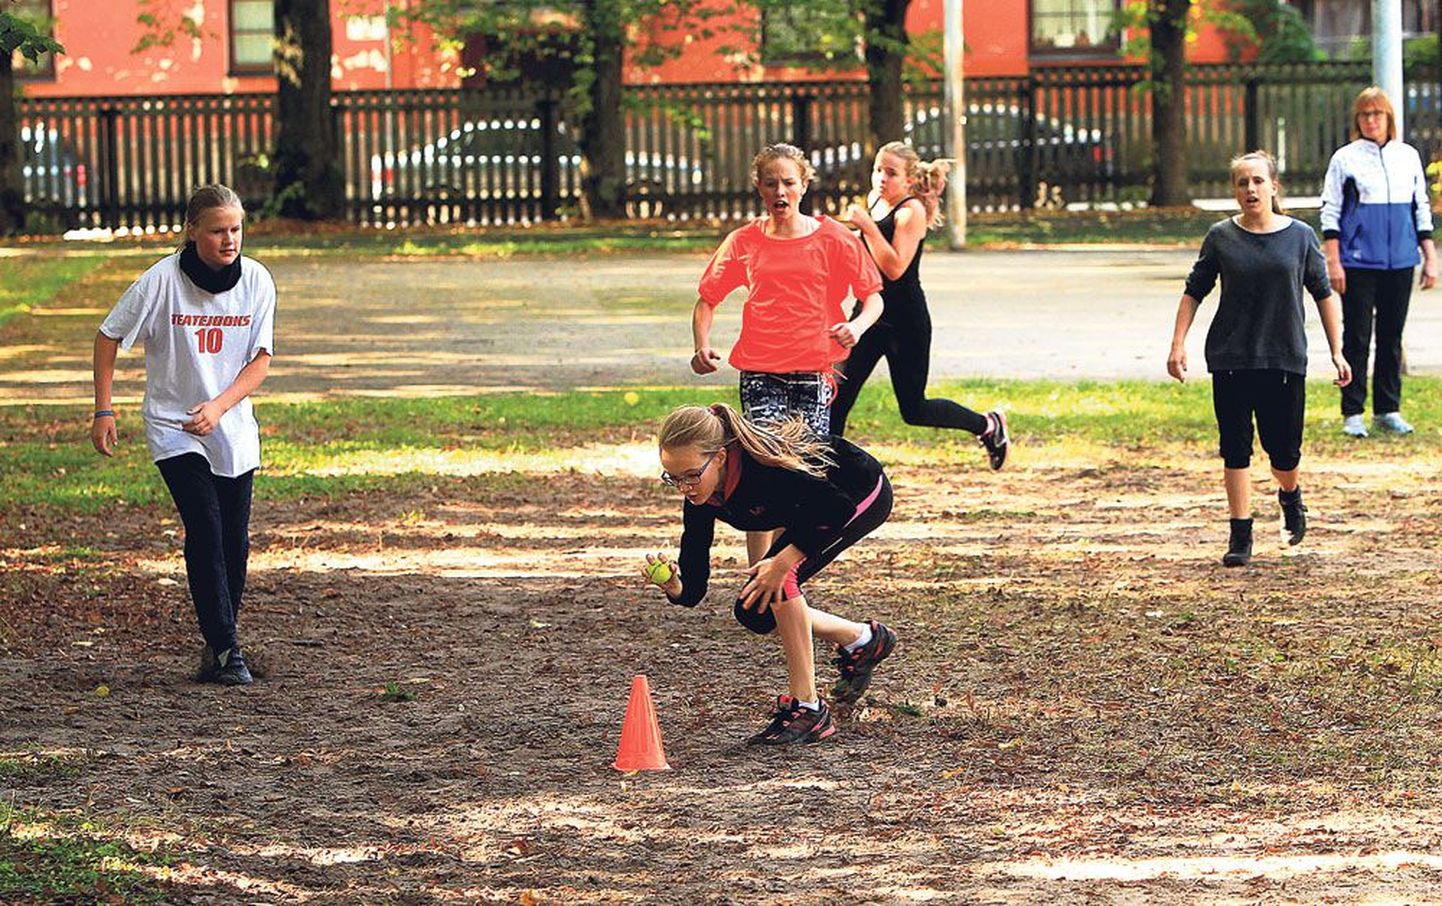 Miina Härma gümnaasiumi 7. klassi neiud veetsid eilse pärastlõuna üheskoos kooli ees pesapalli mängides.